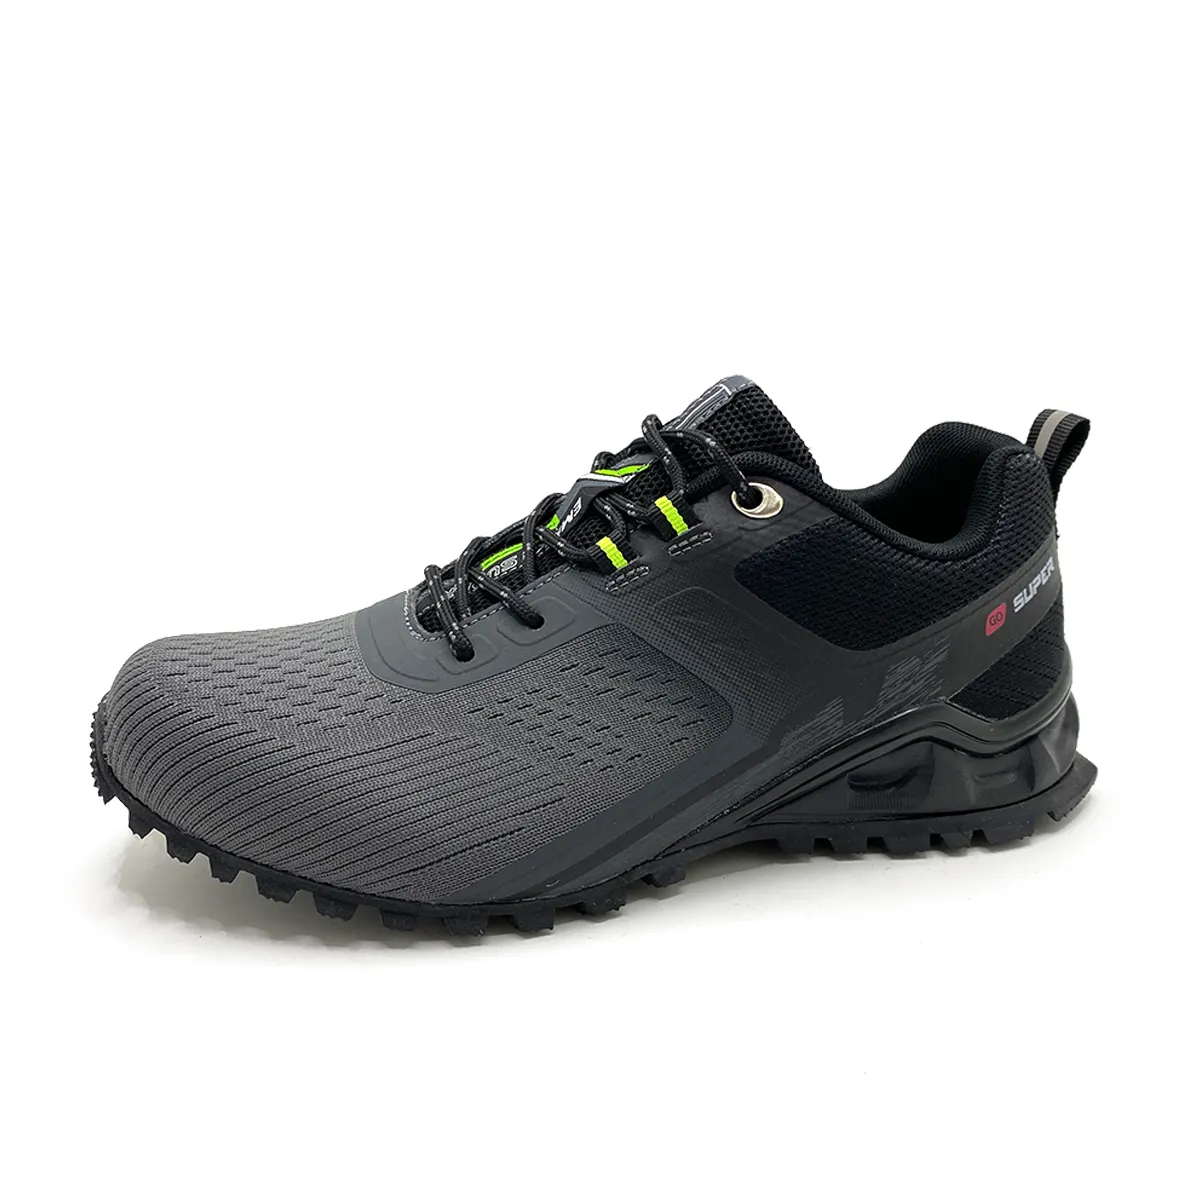 Commercio all'ingrosso spot scarpe da esterno scarpe da trekking personalizzate per gli uomini outdoor escursioni scarpe da ginnastica per gli uomini outdoor scarpe da trekking impermeabili per gli uomini